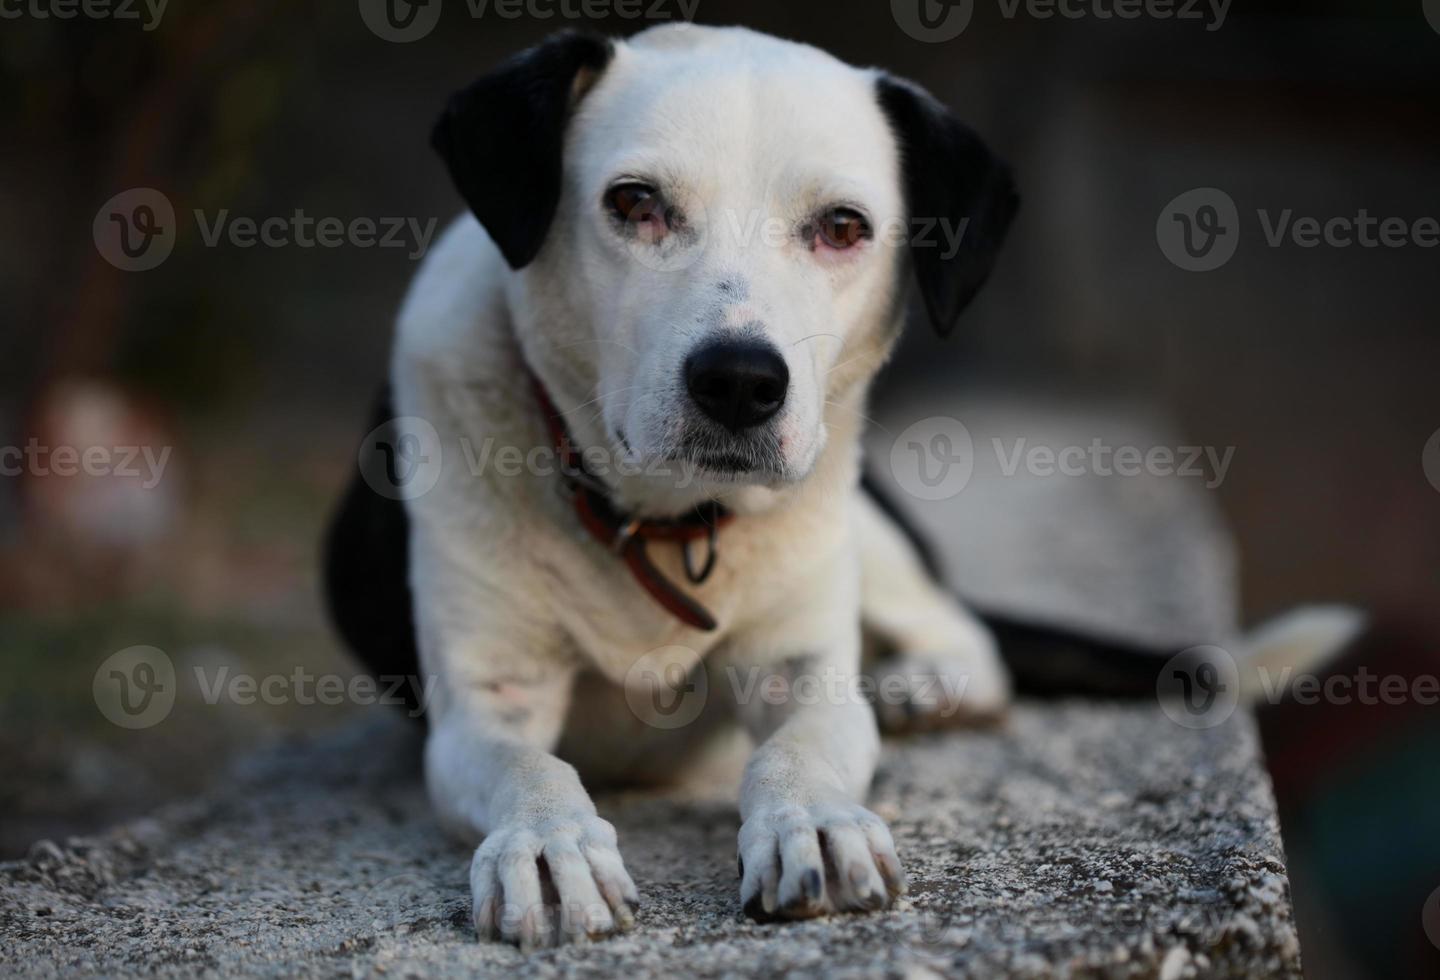 süßes weißes und schwarzes Hundeprofil, Nahaufnahme, Tierhintergrund, hohe Qualität, großer Sofortdruck foto